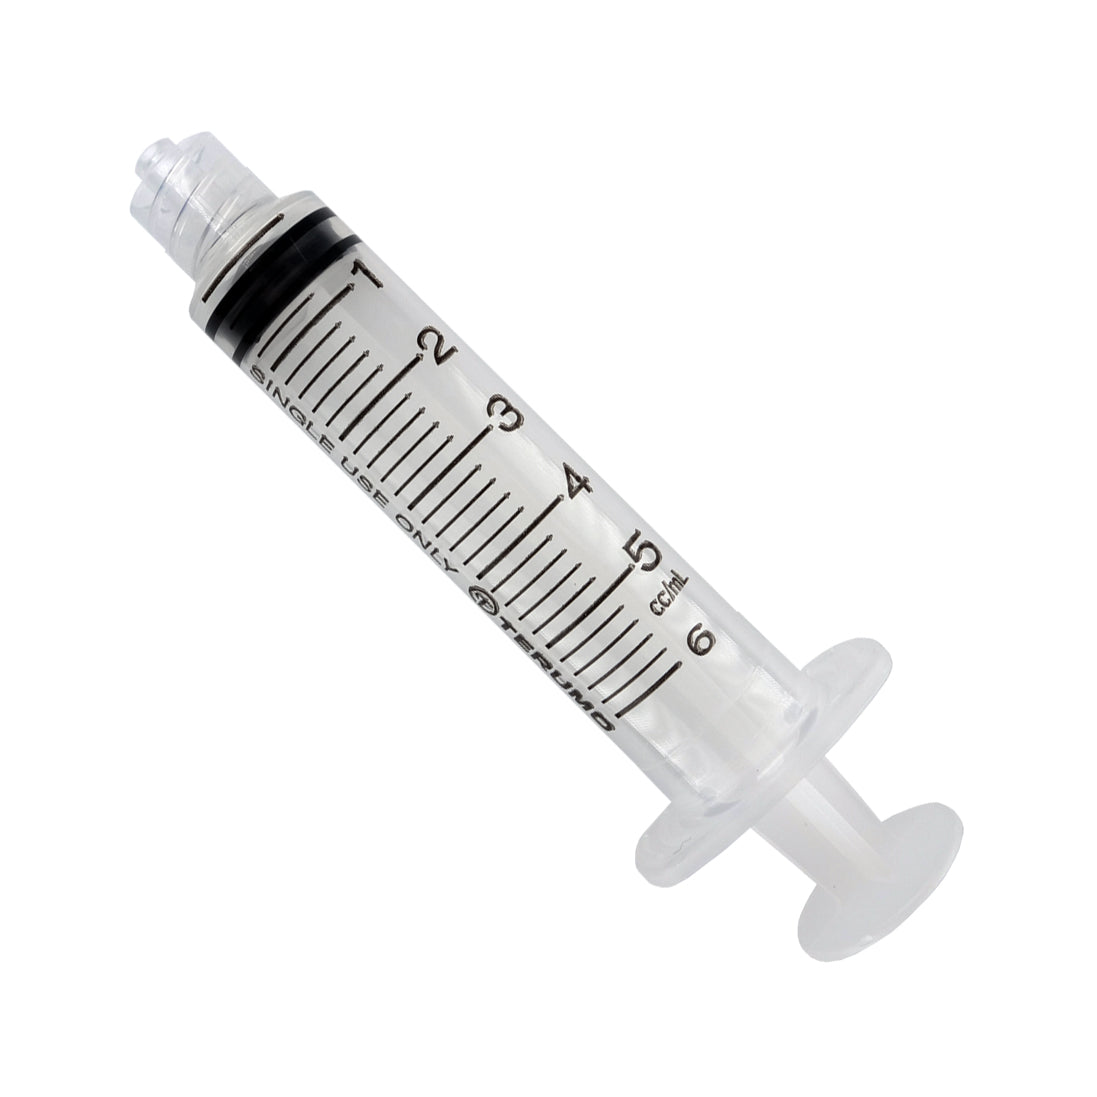 Syringe 5ml Luer Lock Sterile